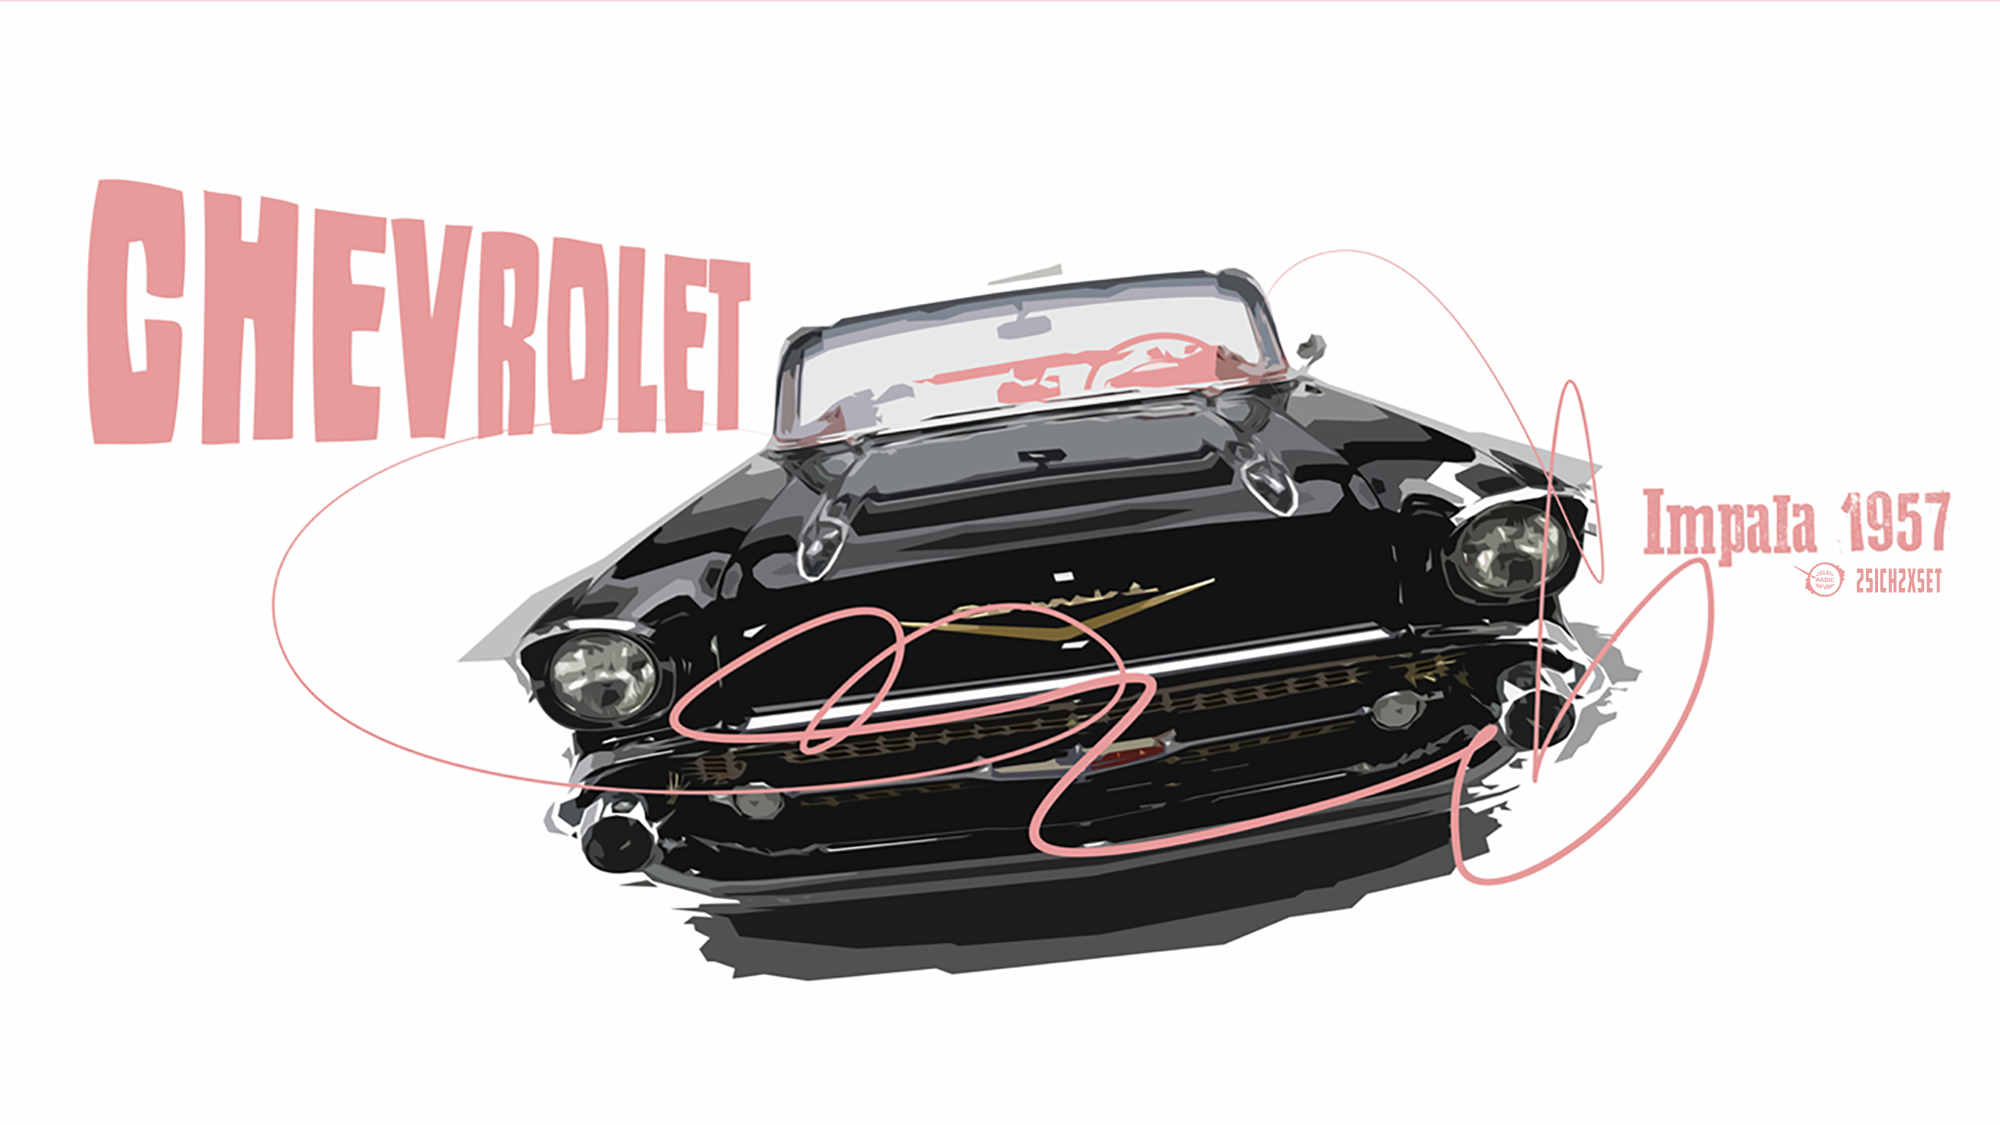 Chevrolet Impala HD Wallpaper by zelko